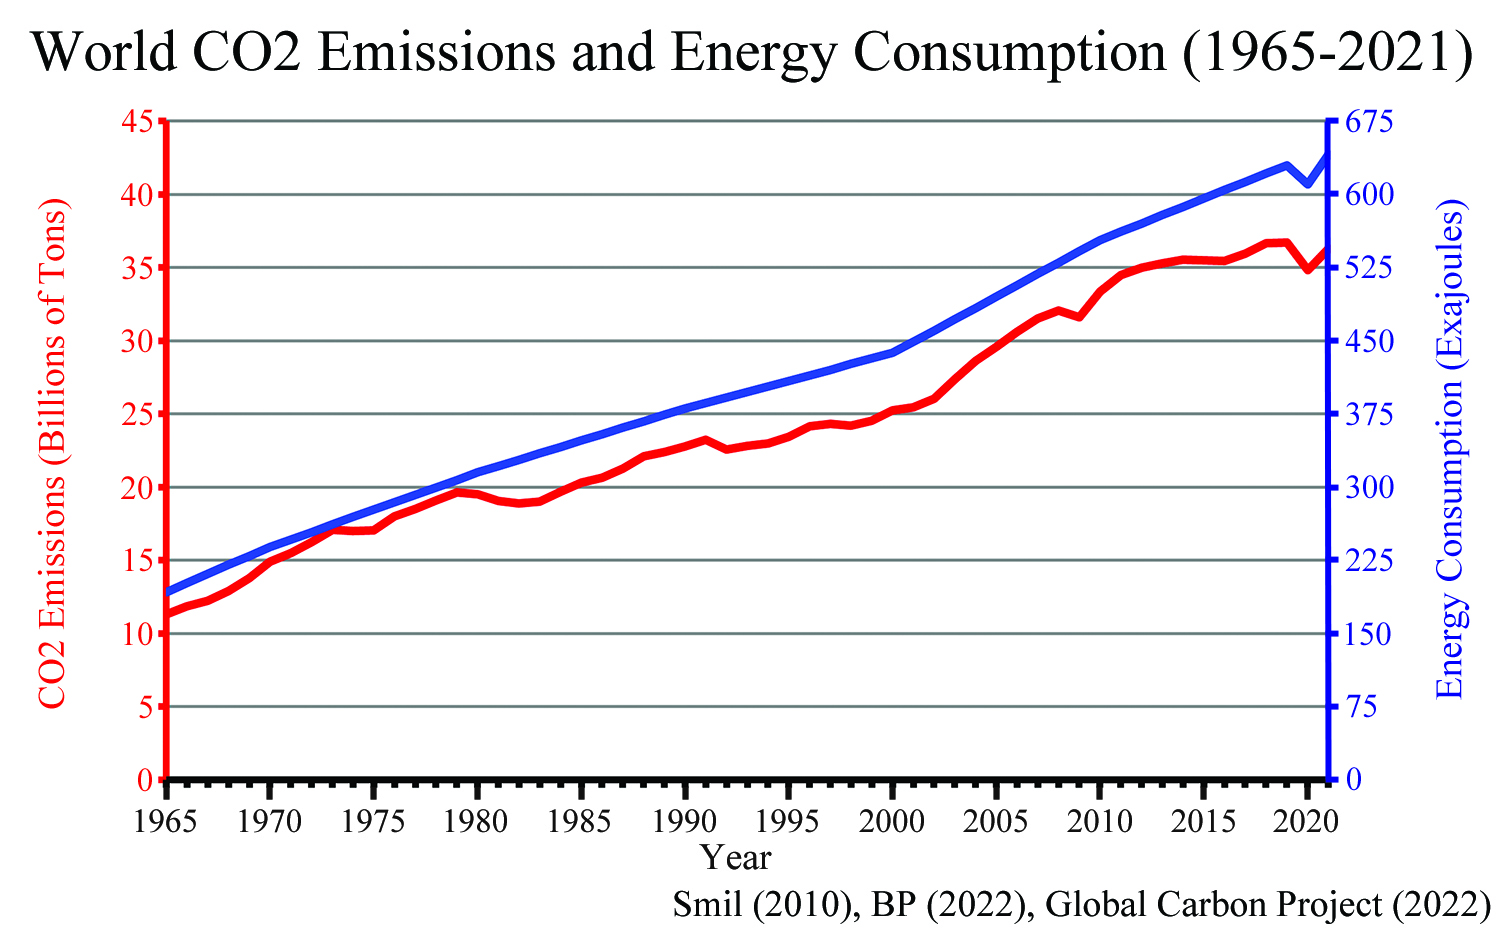 World Emissions and Energy 1965-2021. Courtesy of Steve Goreham.